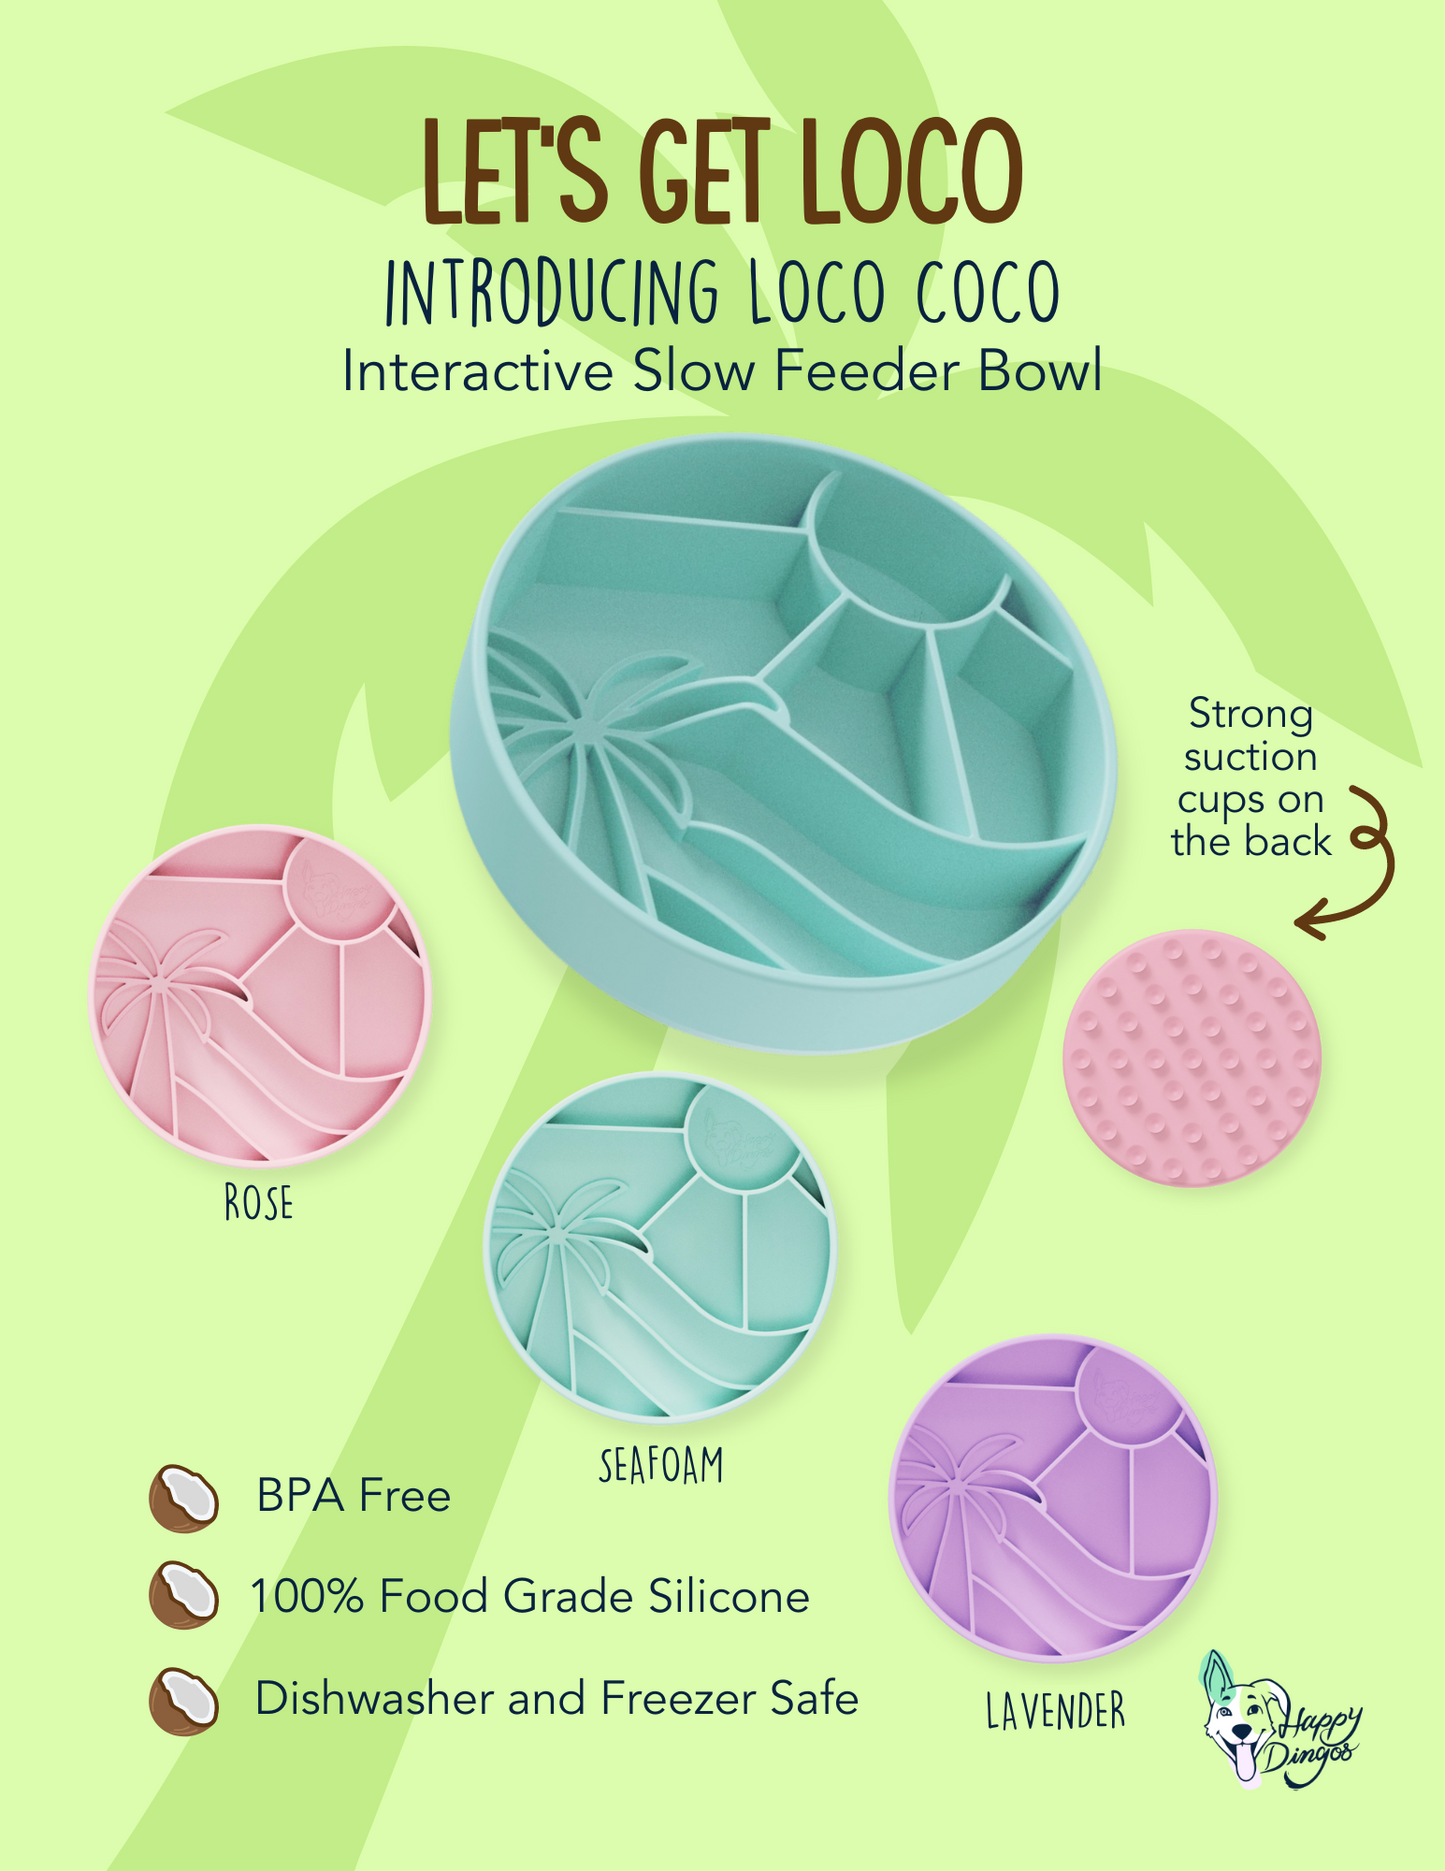 Loco Coco Interactive Slow Feeder Bowl